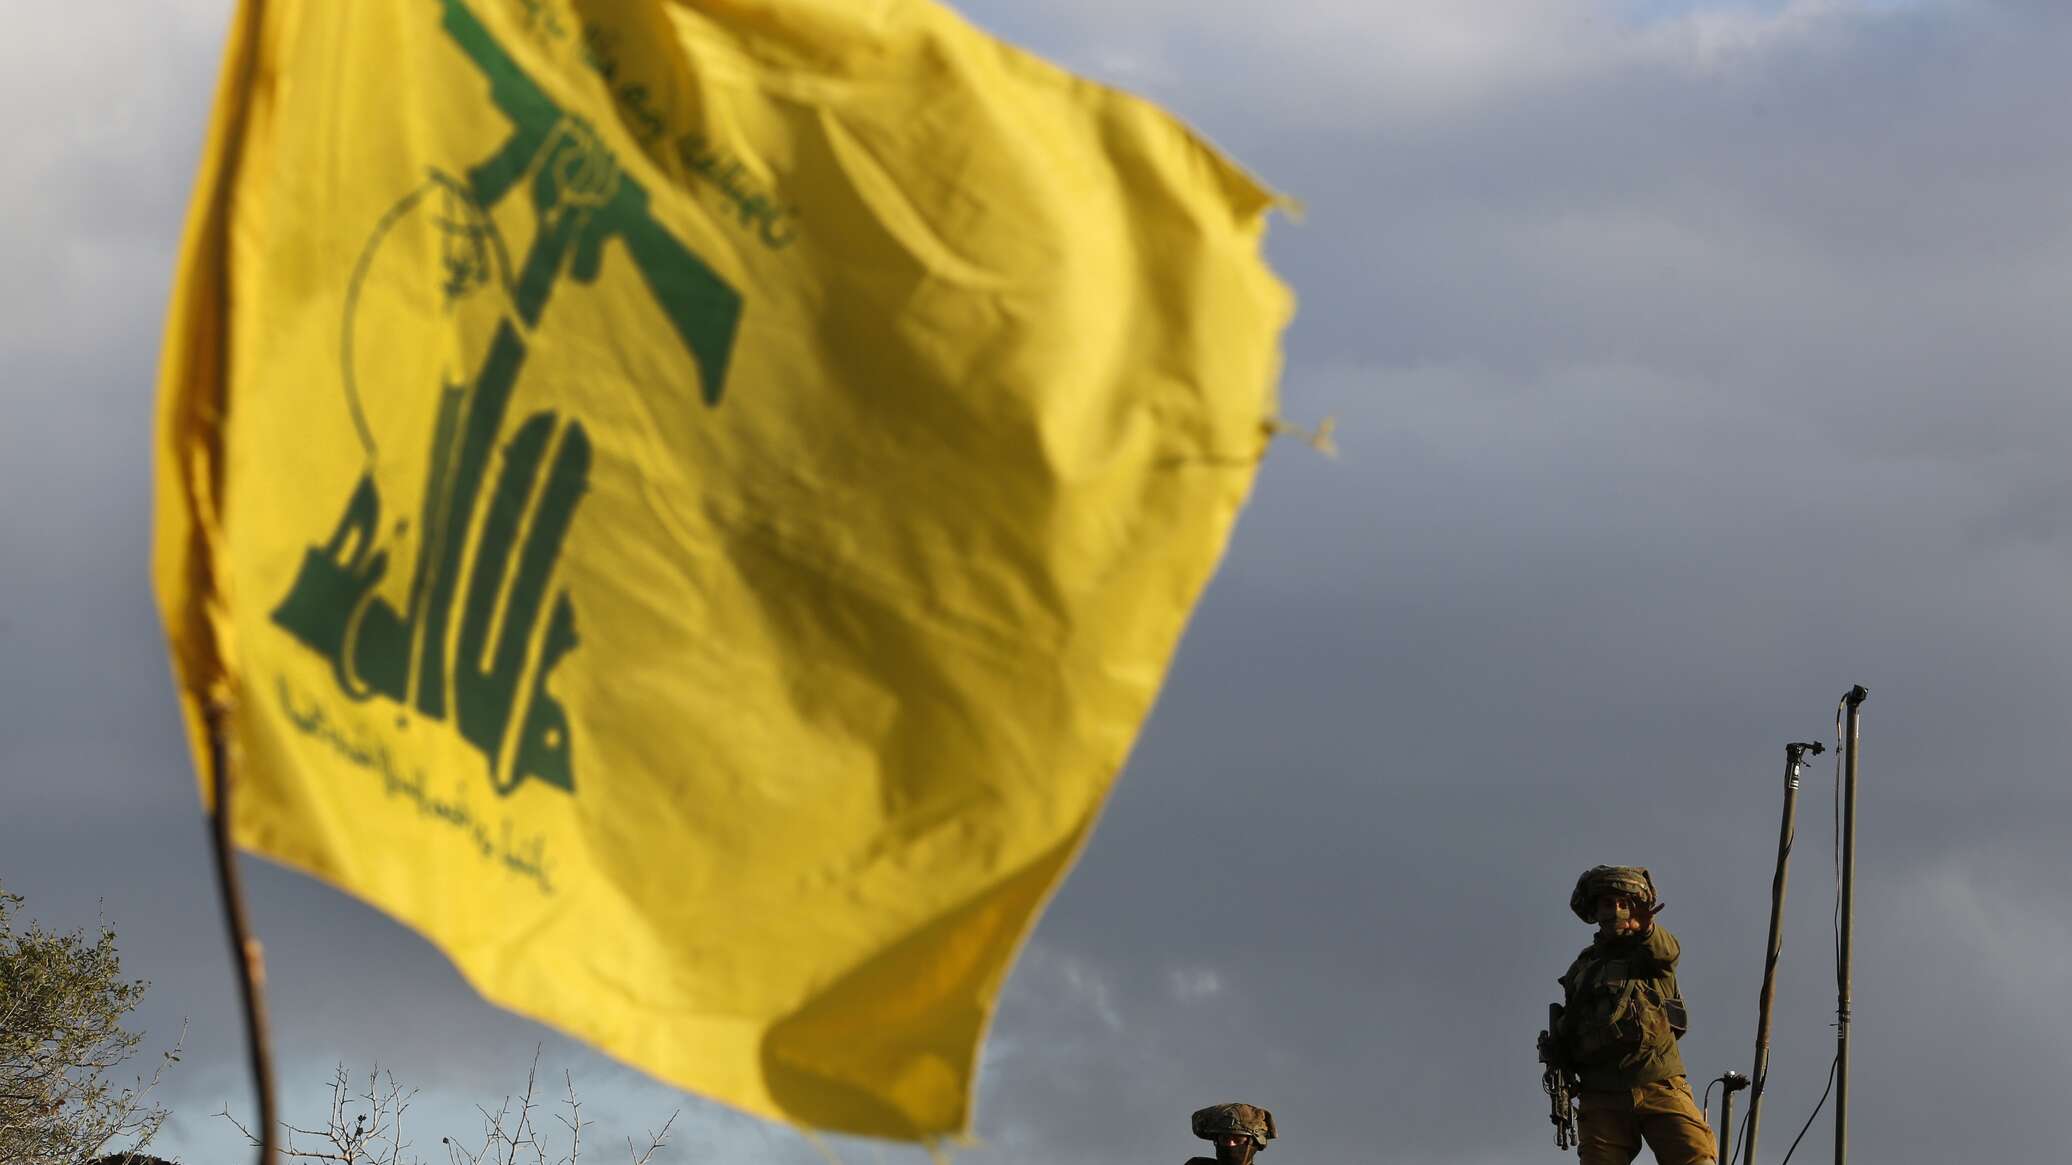 خبيرة: إذا تدخل "حزب الله" في العملية الفلسطينية قد يتوقف ملف النفط في لبنان